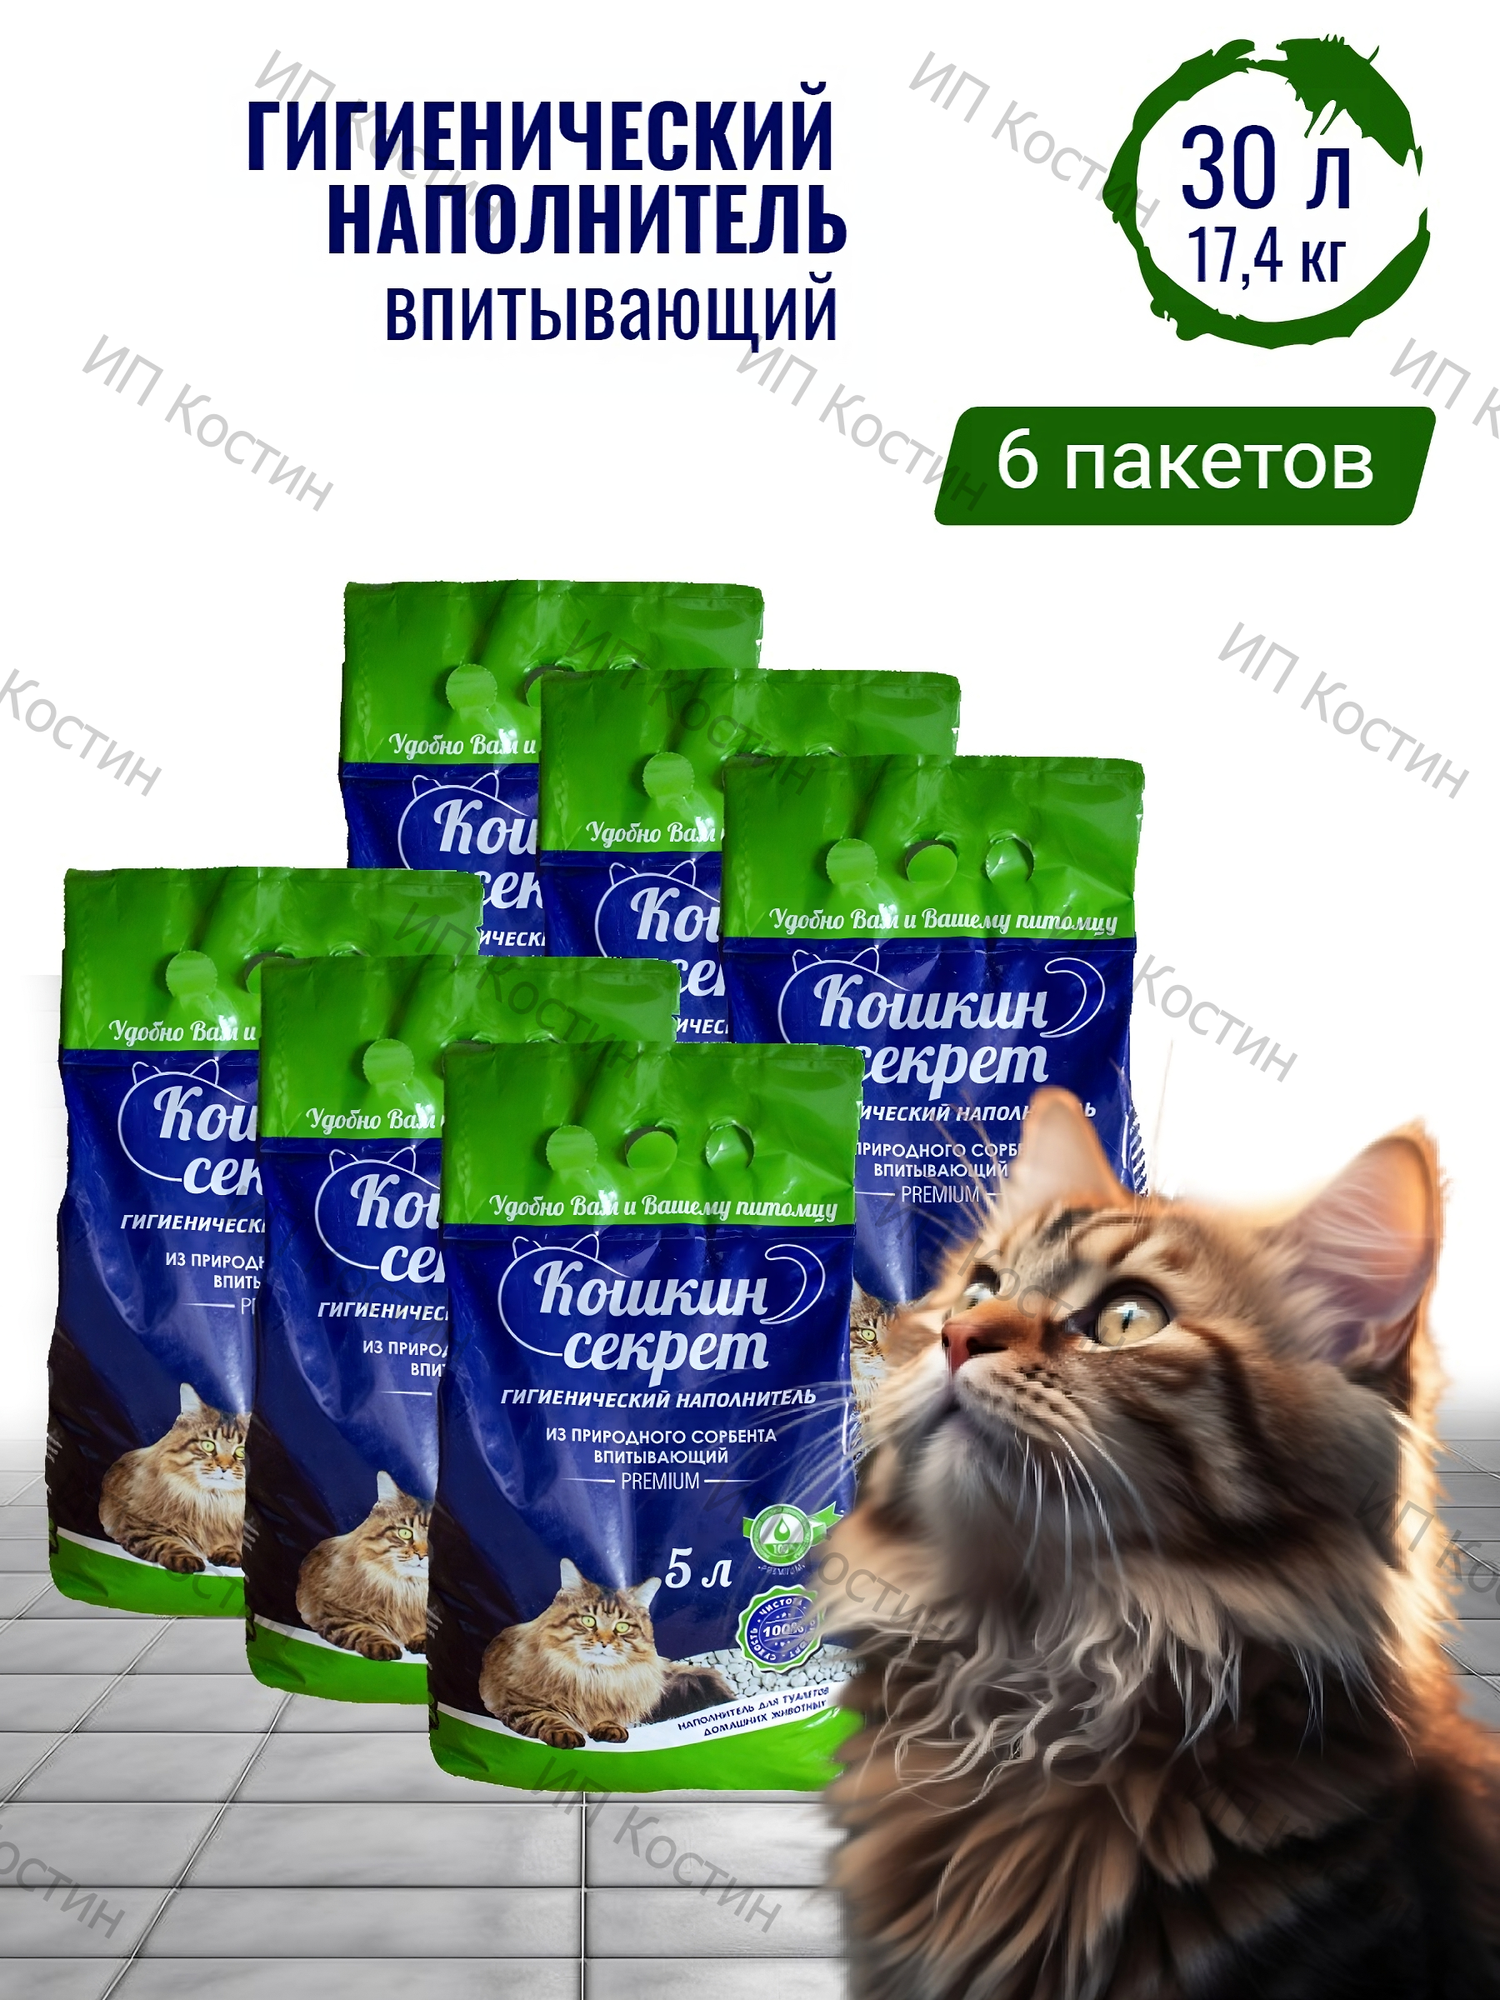 Гигиенический впитывающий наполнитель кошкин секрет комплект 6 пакетов ПО 5 Л. 30 литров, 17.4 КГ.